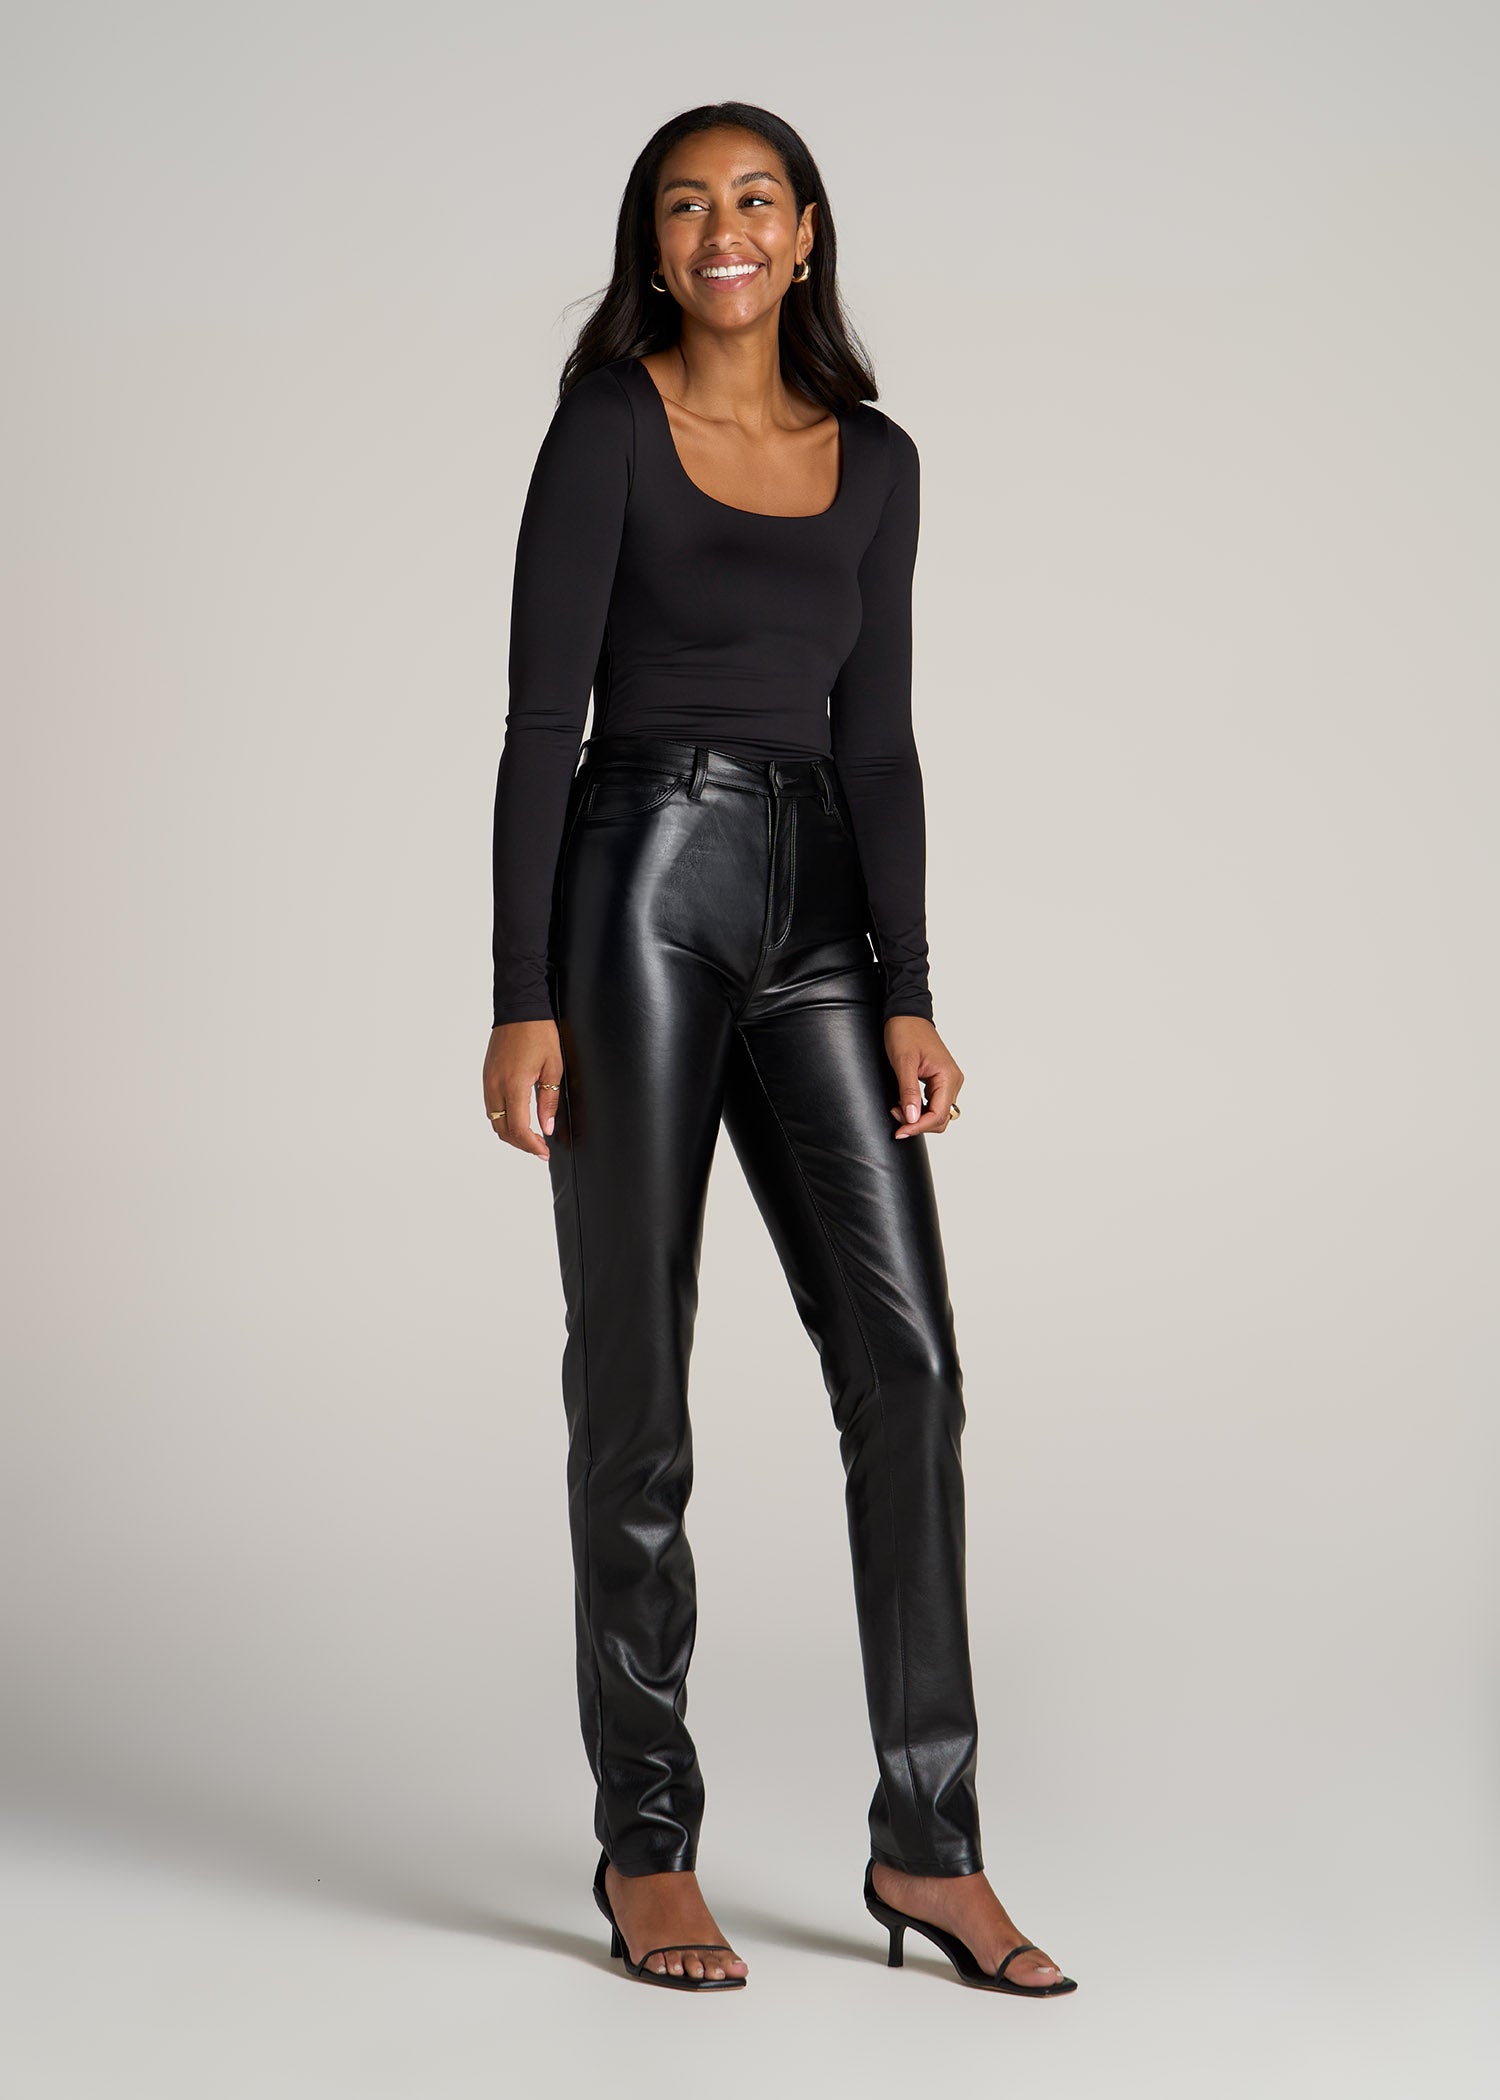 Long Sleeve Square Neck Bodysuit for Tall Women in Black